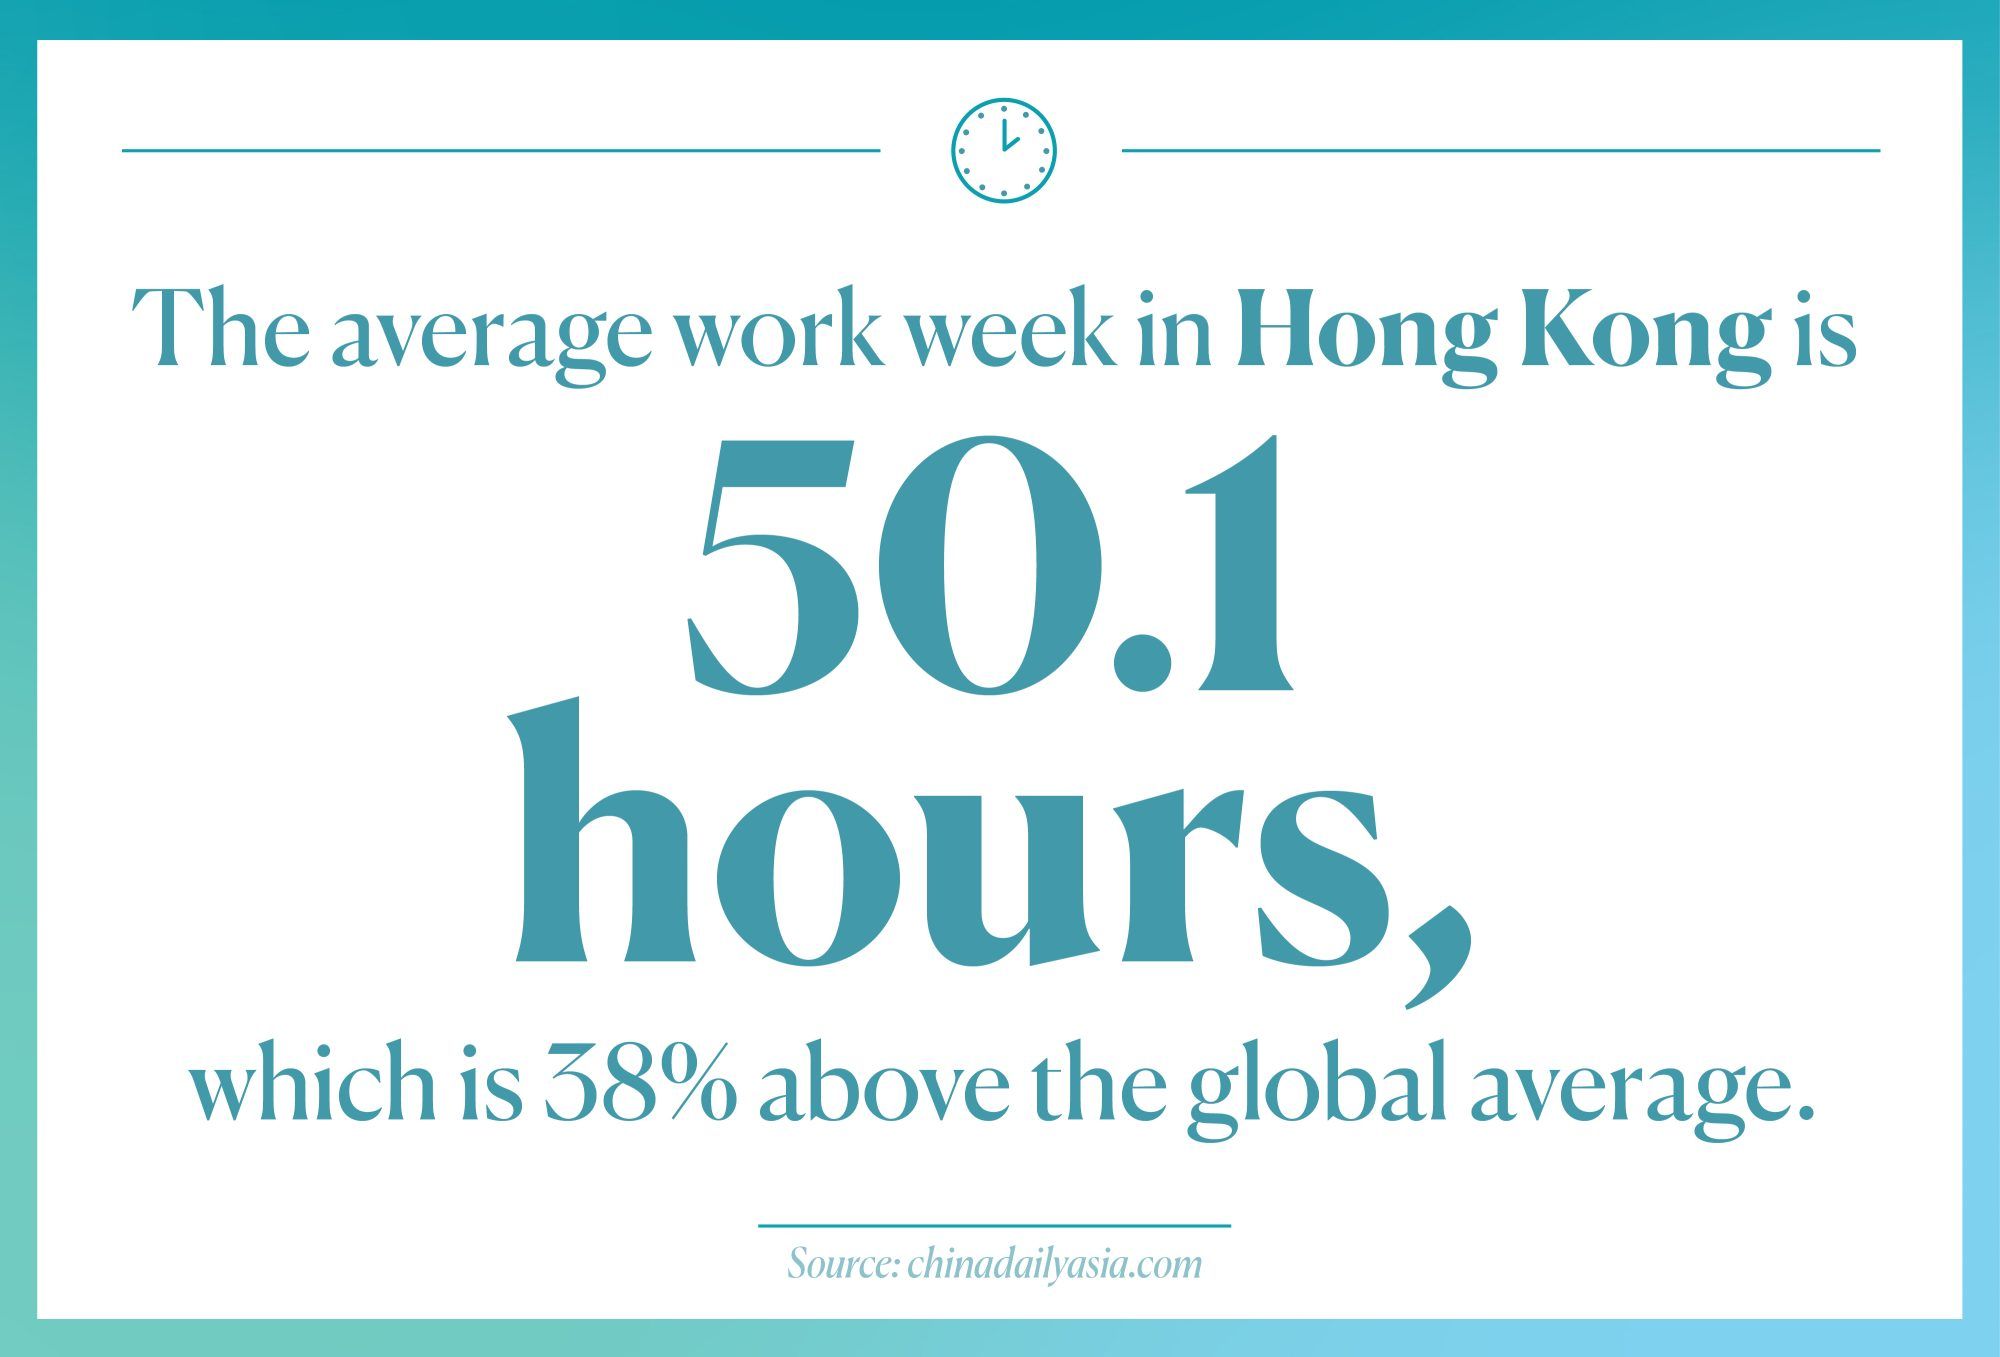 vidutinės darbo valandos Honkonge